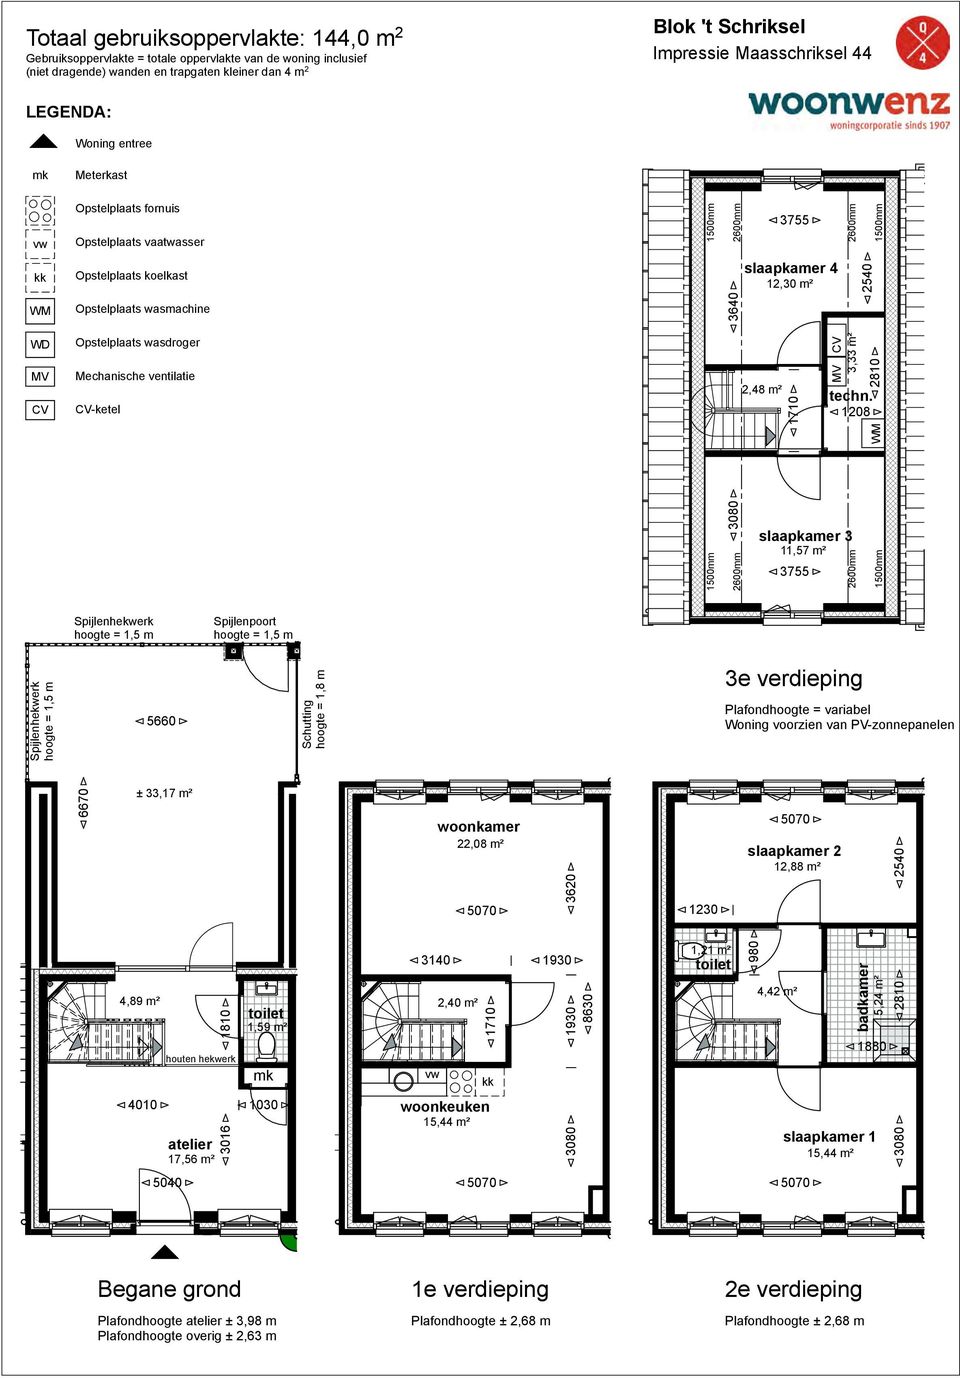 22,08 m² 12,88 m² 4,89 m² 4010 atelier 17,56 m² 1810 3016 1,59 m² 3140 2,40 m²